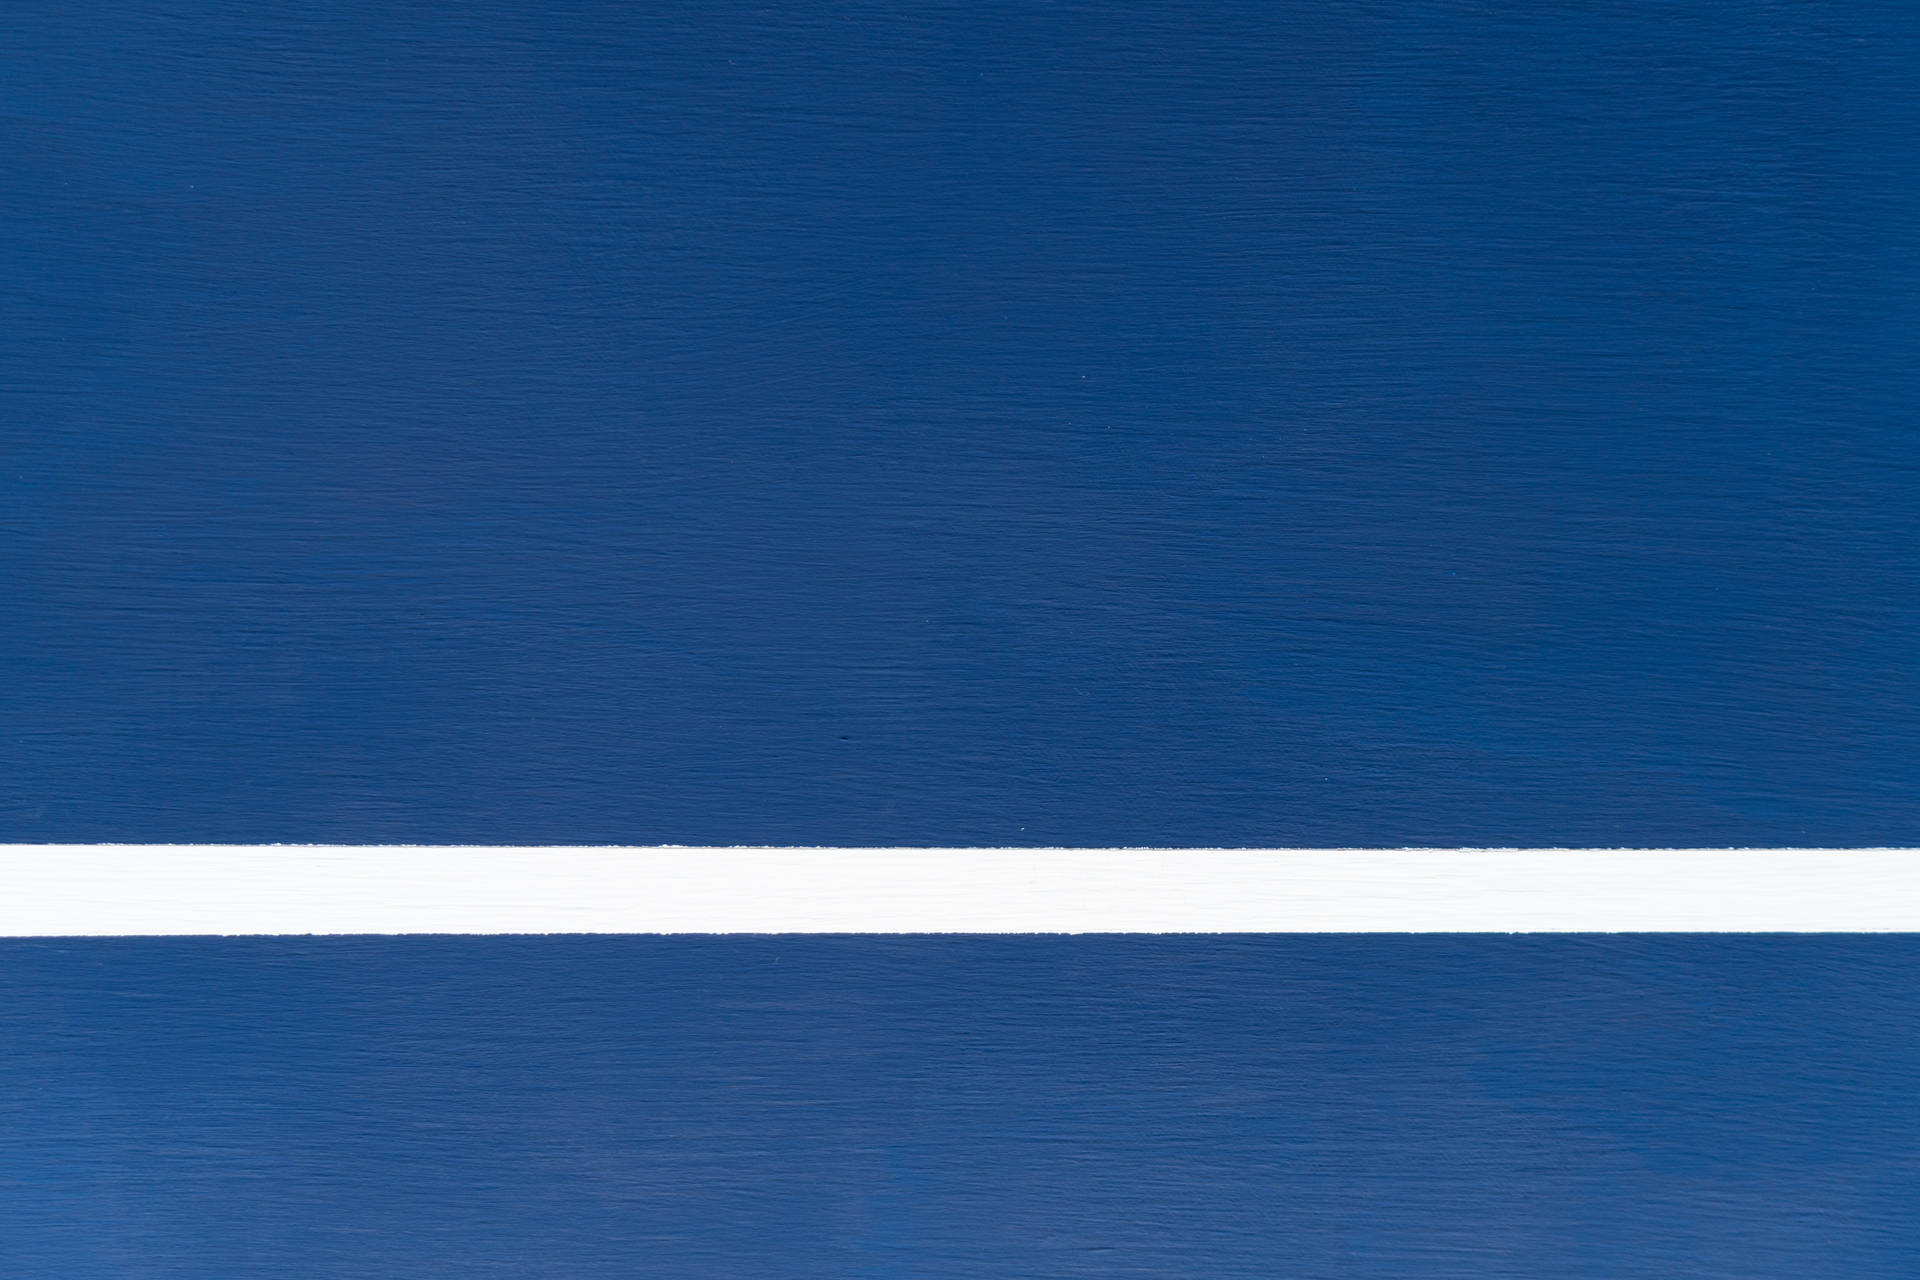 White Line In Navy Blue Wallpaper